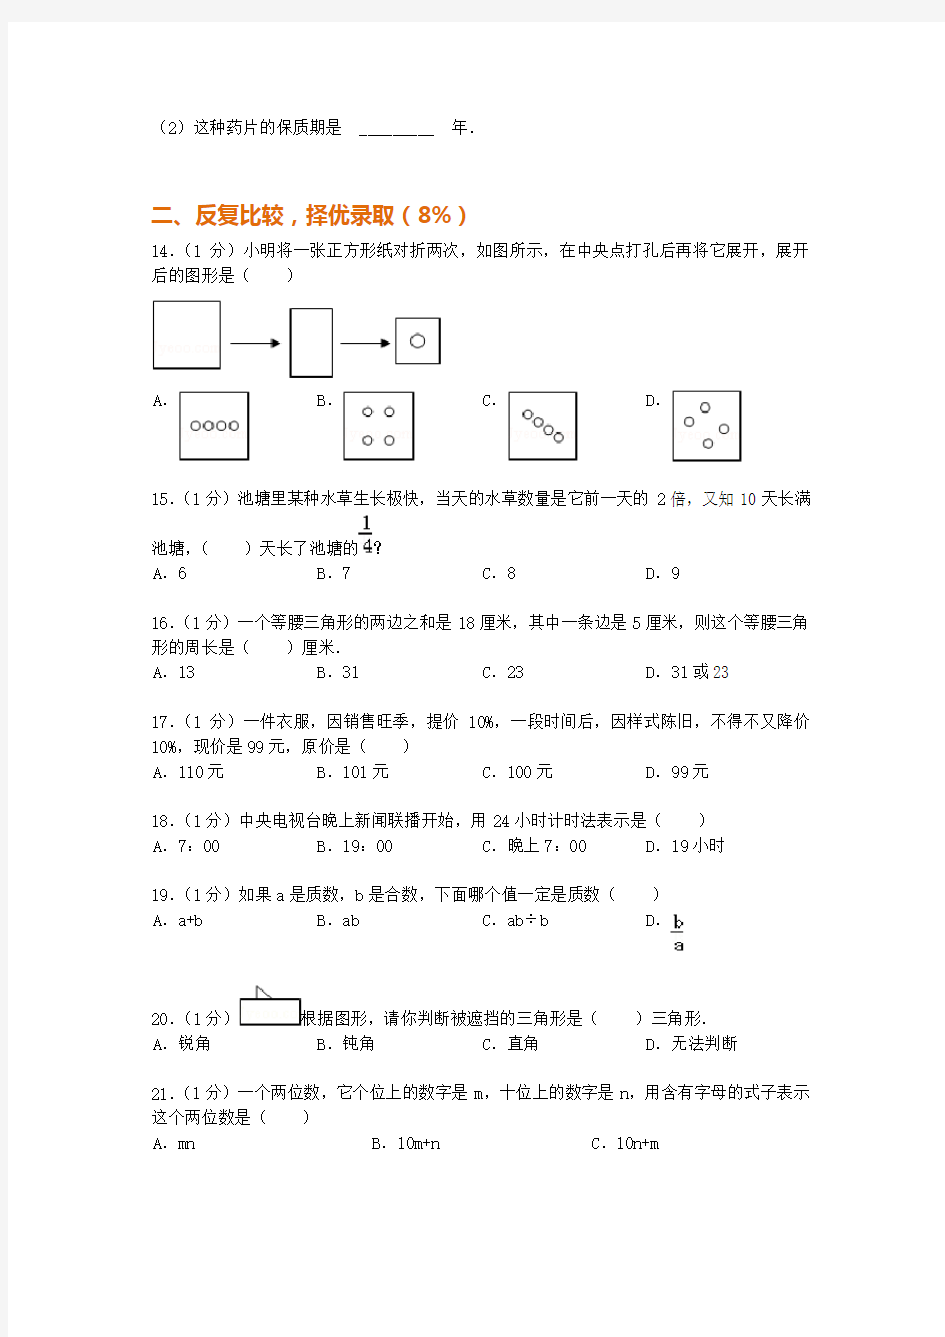 2019年小升初分班考试数学模拟试卷(附答案讲解)